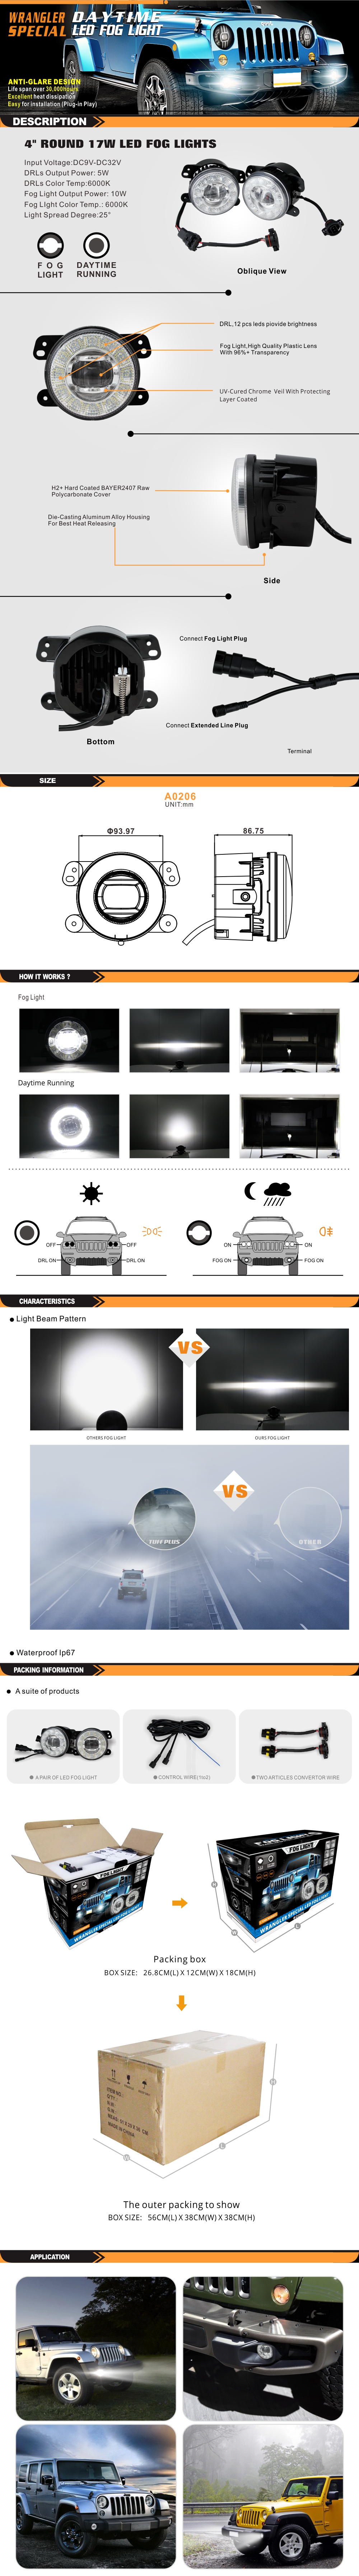 A0206-标准灯产品描述页